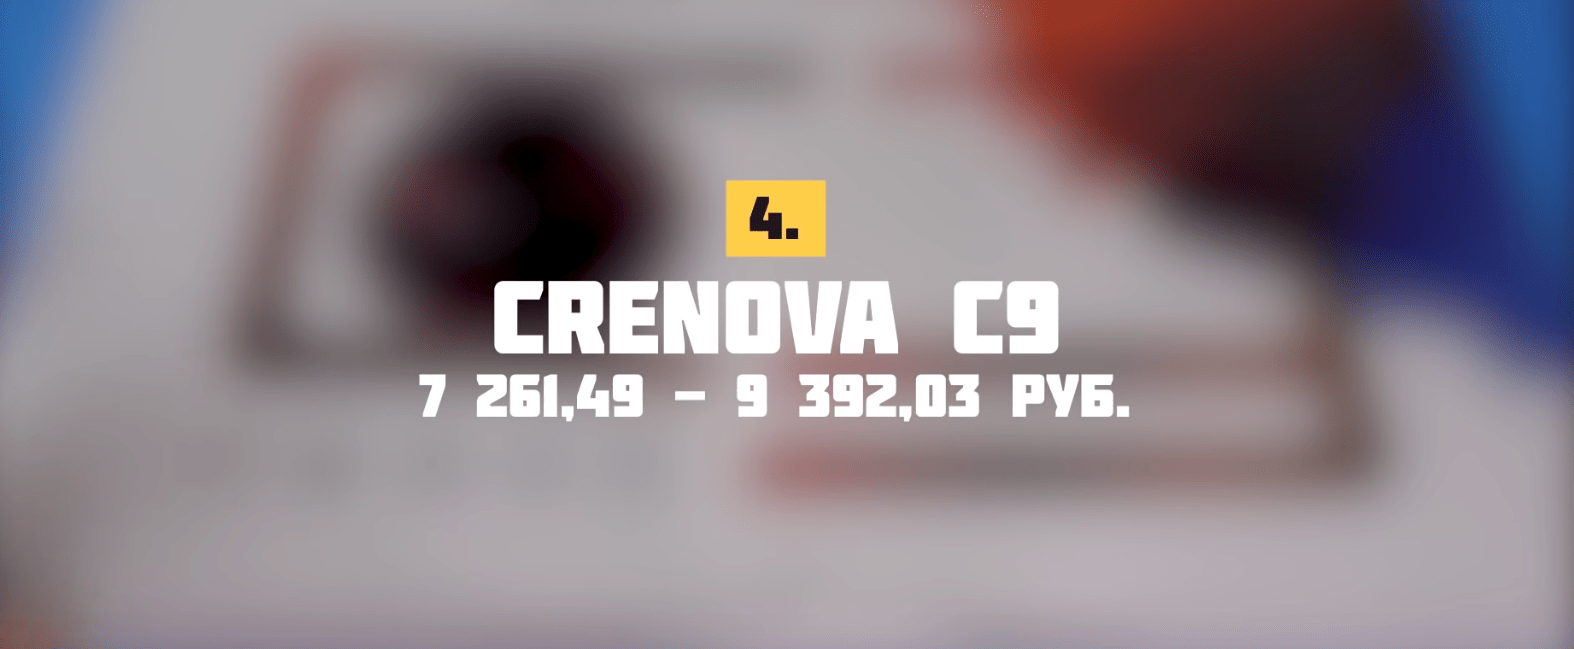 Проектор CRENOVA C9